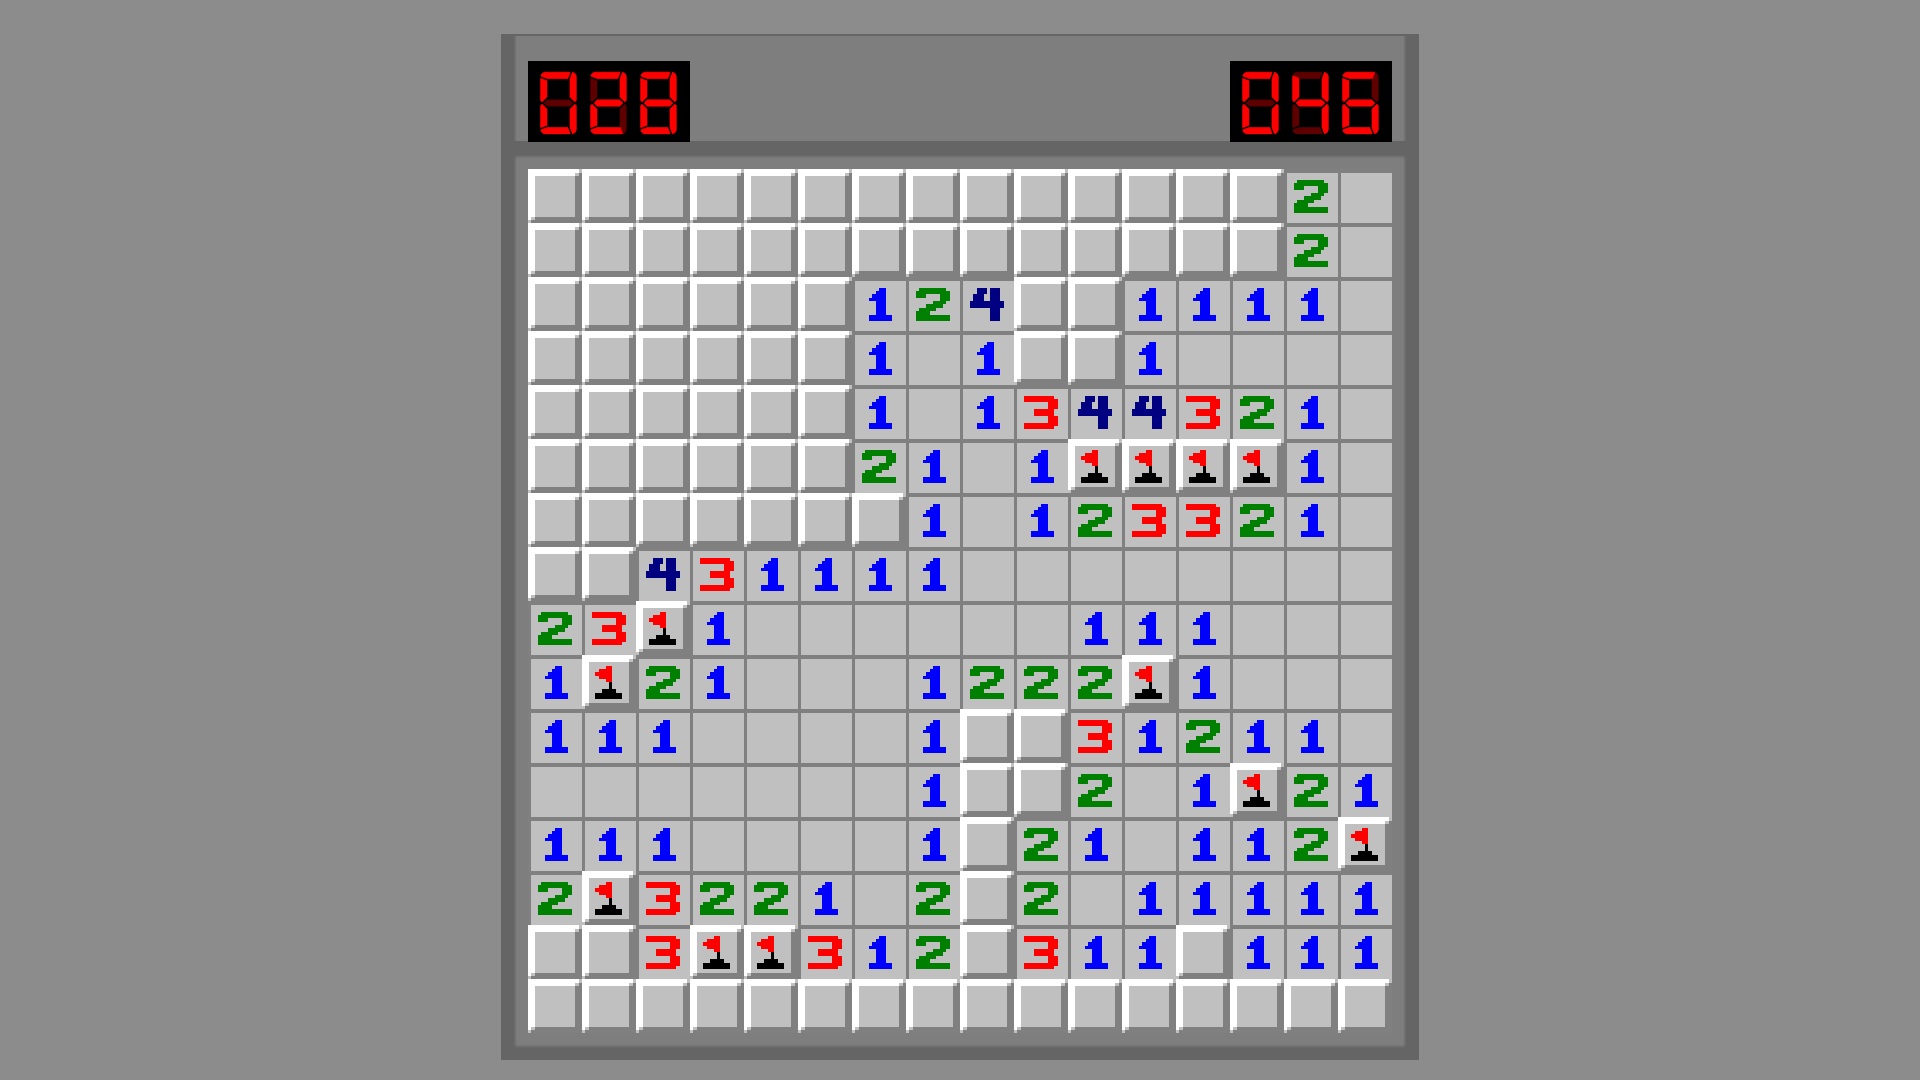 Minesweeper Game · GitHub Topics · GitHub